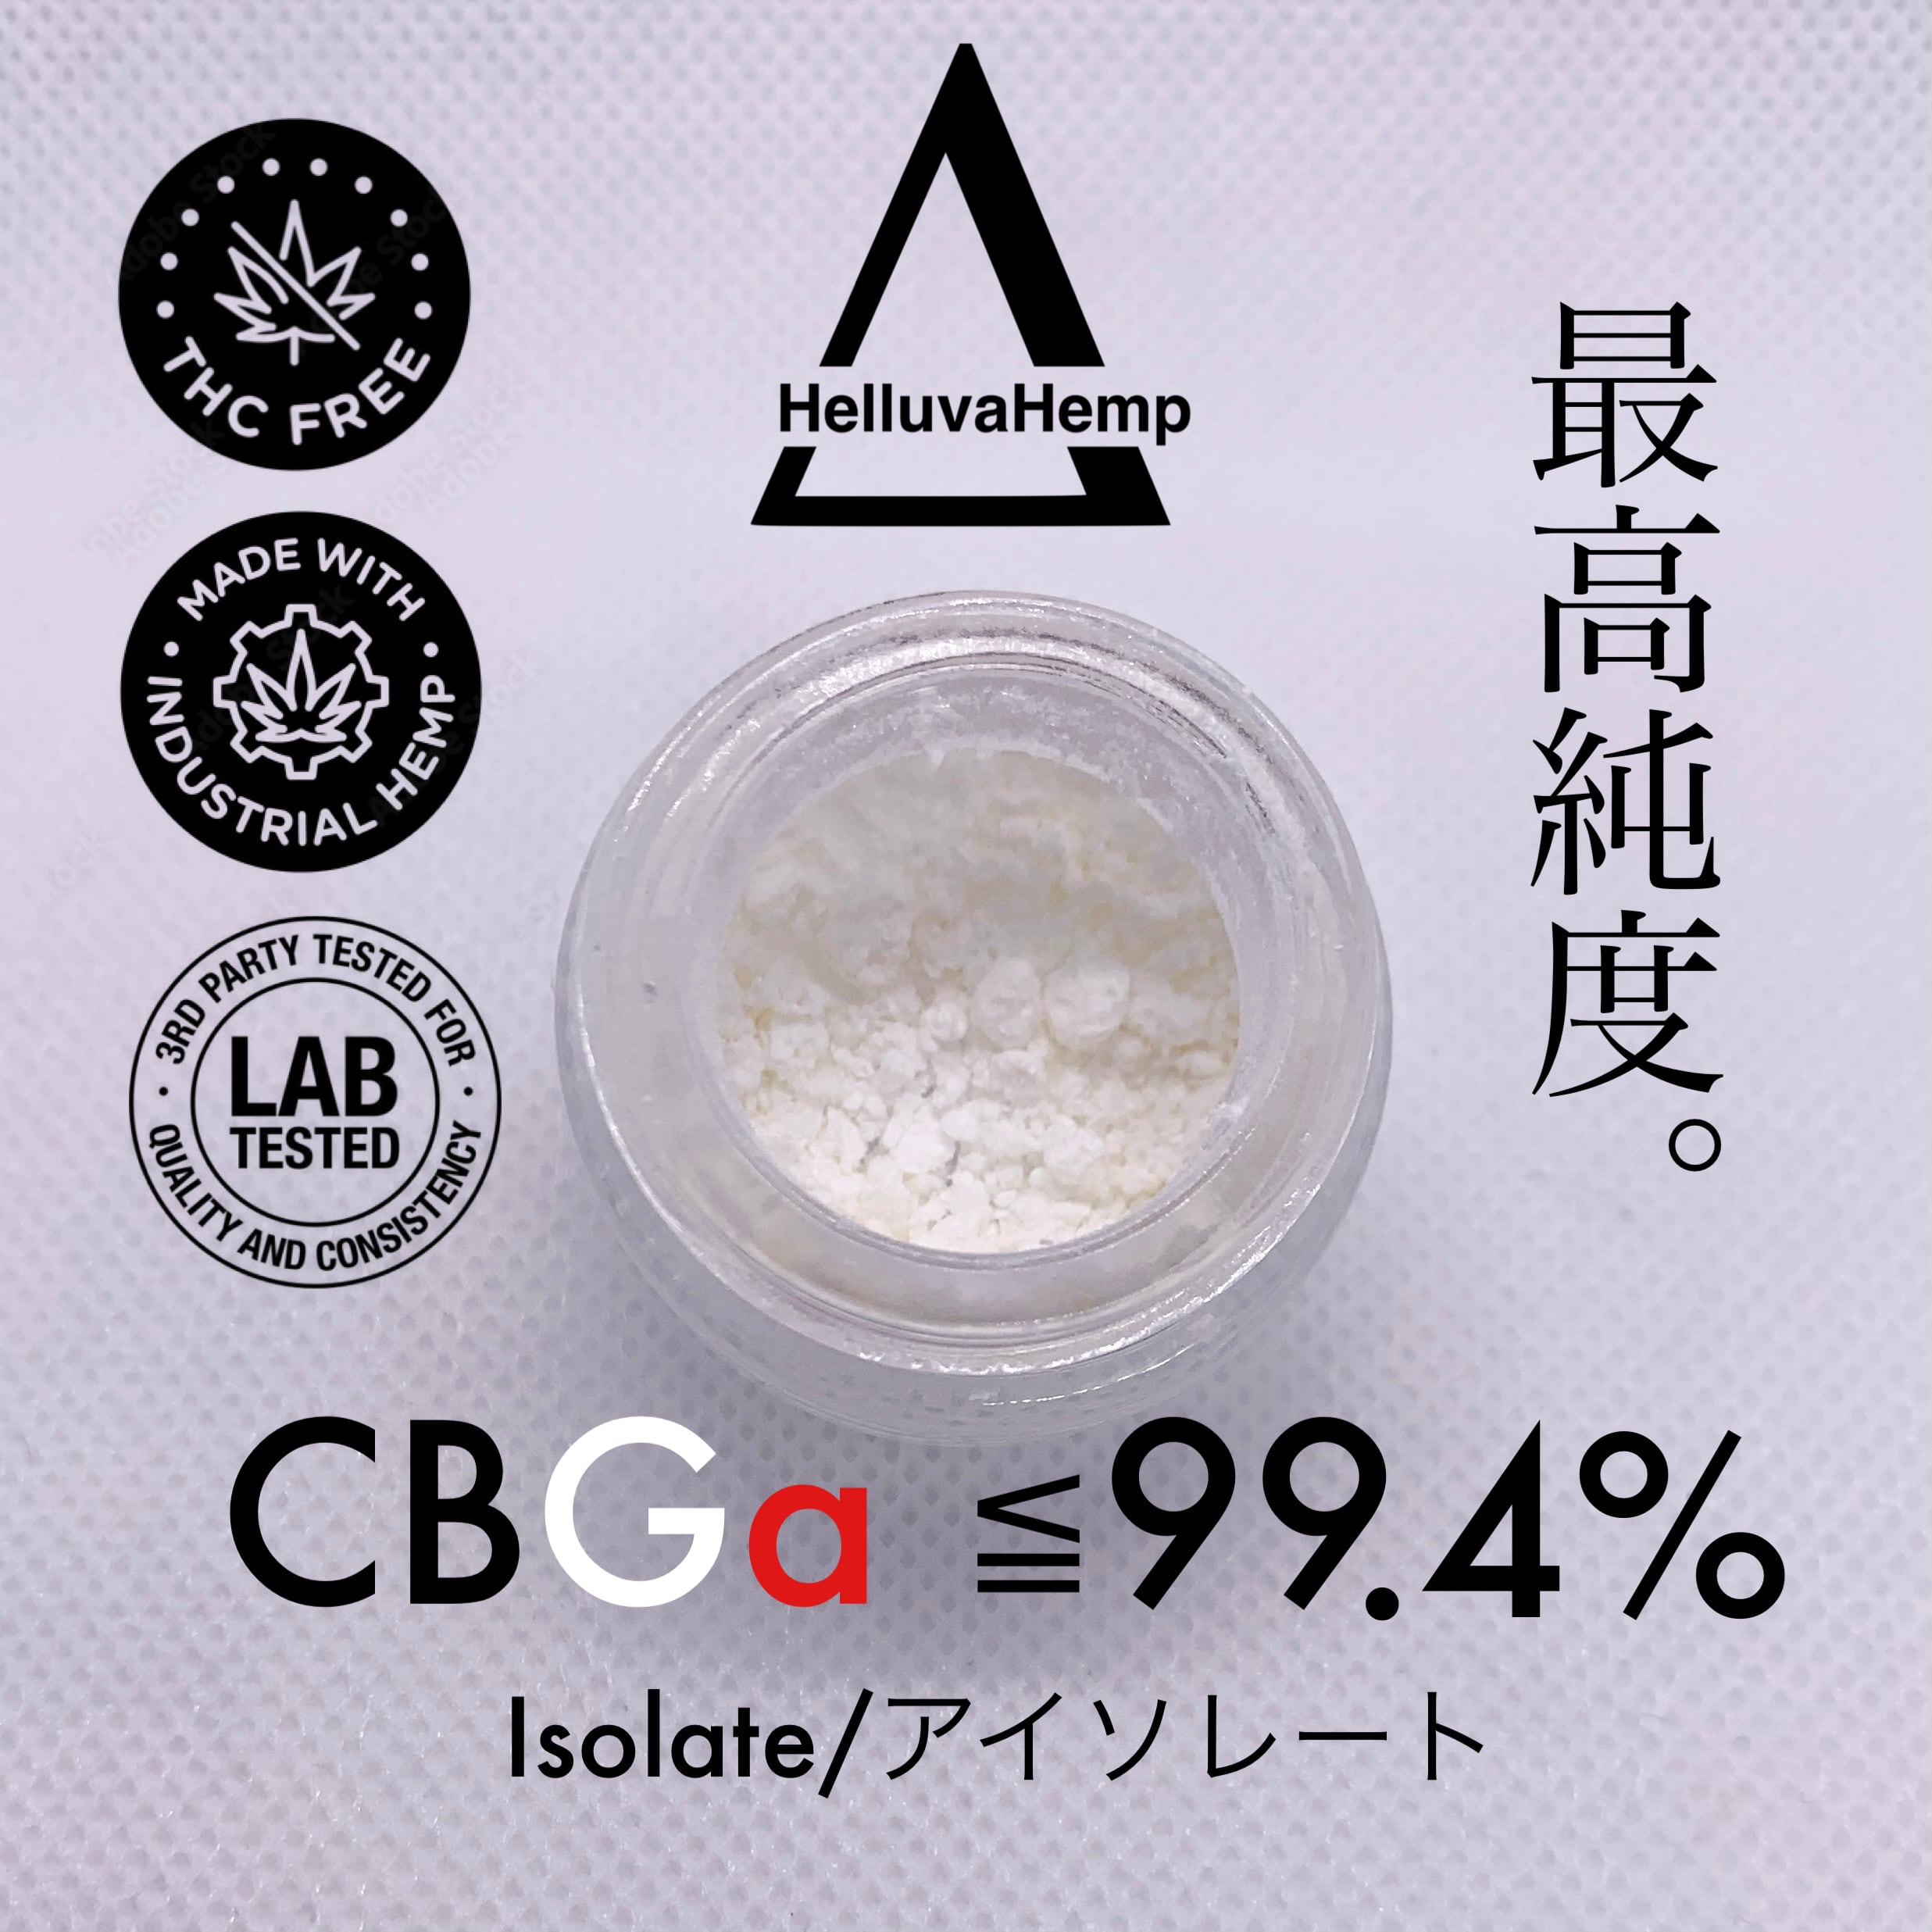 CBD アイソレート 原料 3000g 1gあたり500円 - リラクゼーショングッズ